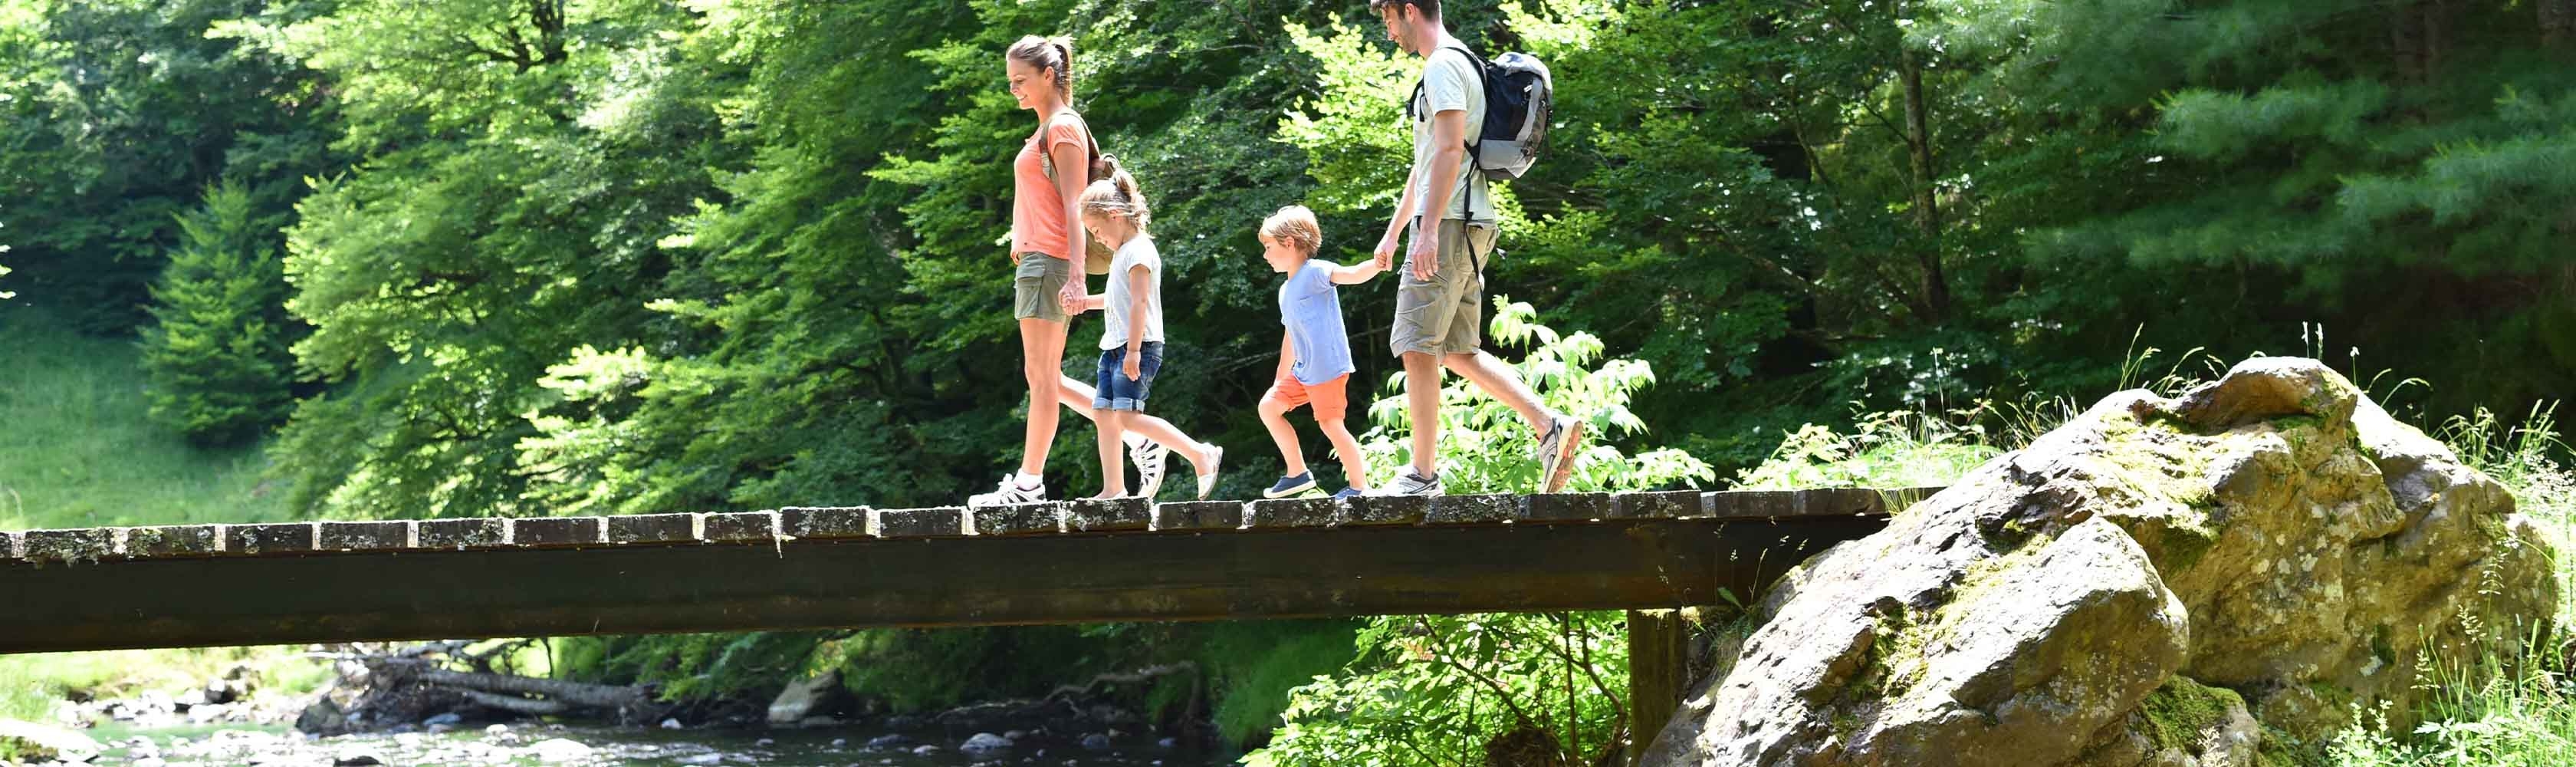 Une famille randonne au bord d'une rivière